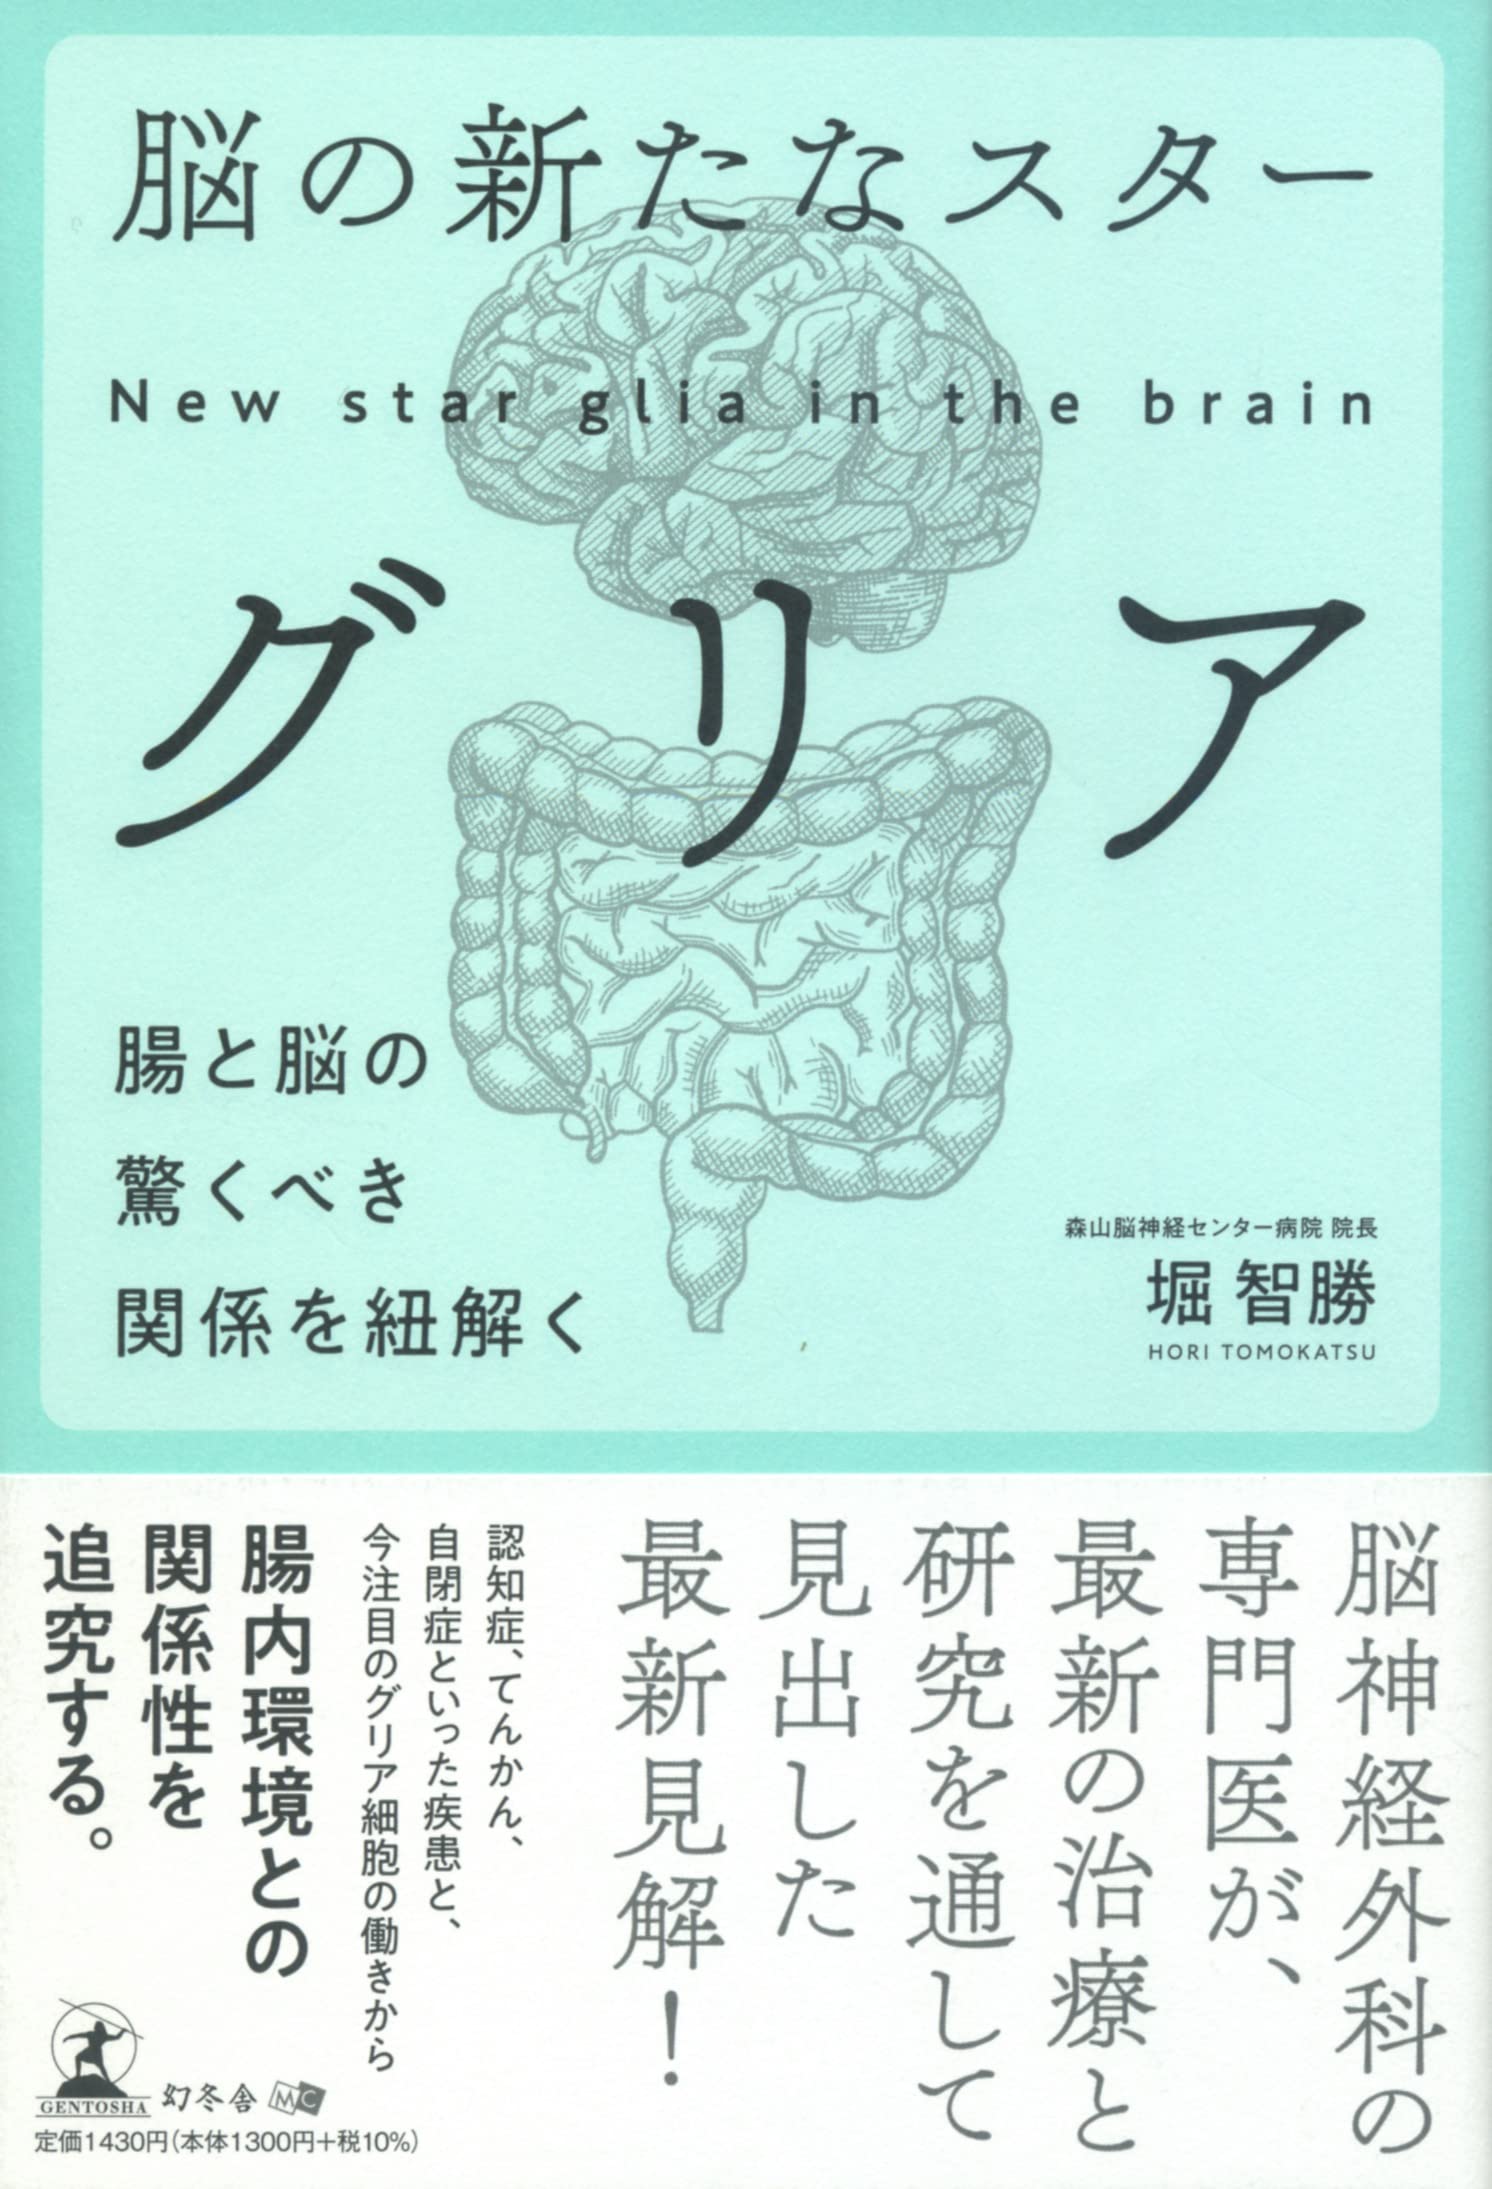 腦の新たなスタ-グリア 腸と腦の驚くべき關係を紐解く